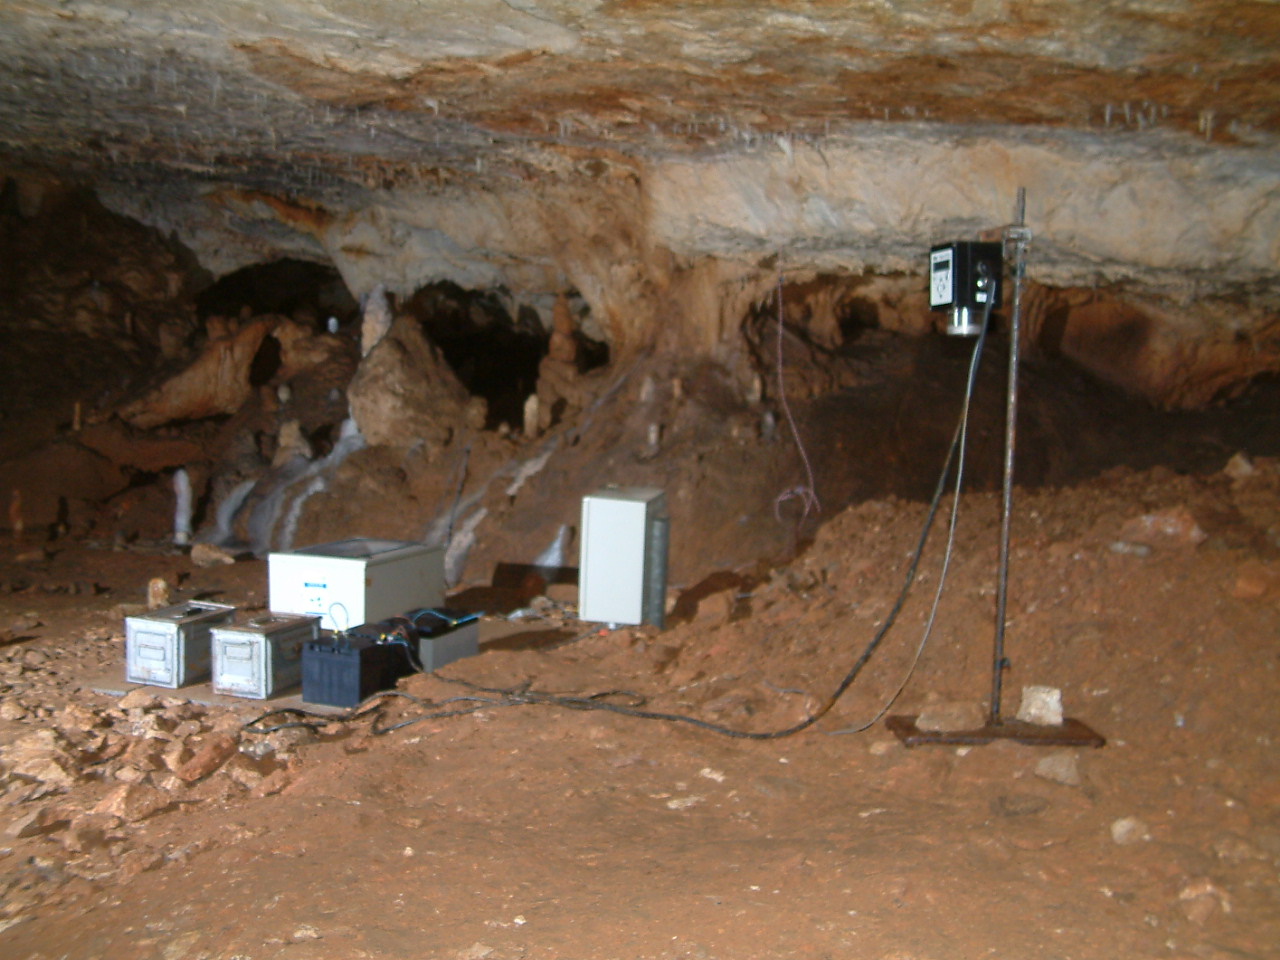 Centrale d'enregistrement des capteurs situés dans la grotte